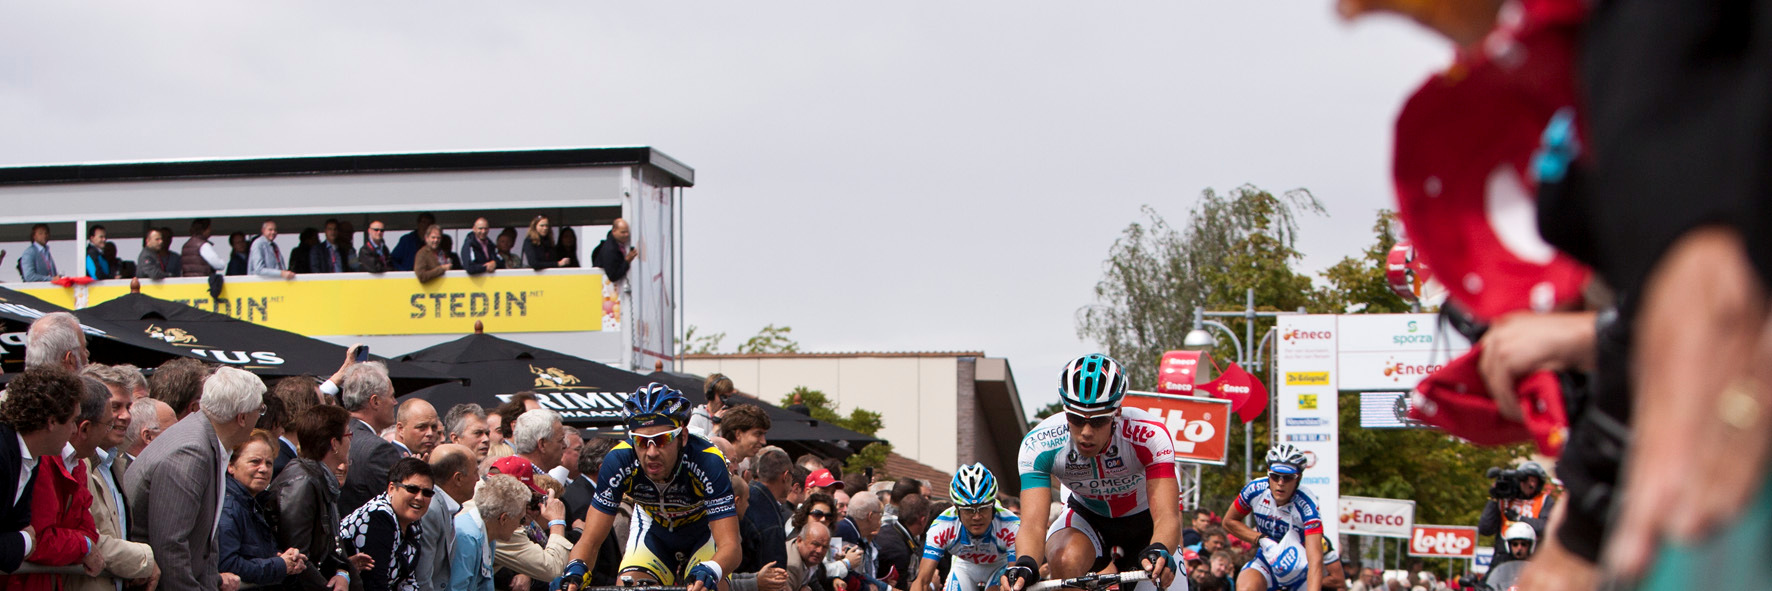 Op 6 augustus start de eerste etappe van de Eneco Tour 2012 in Waalwijk.